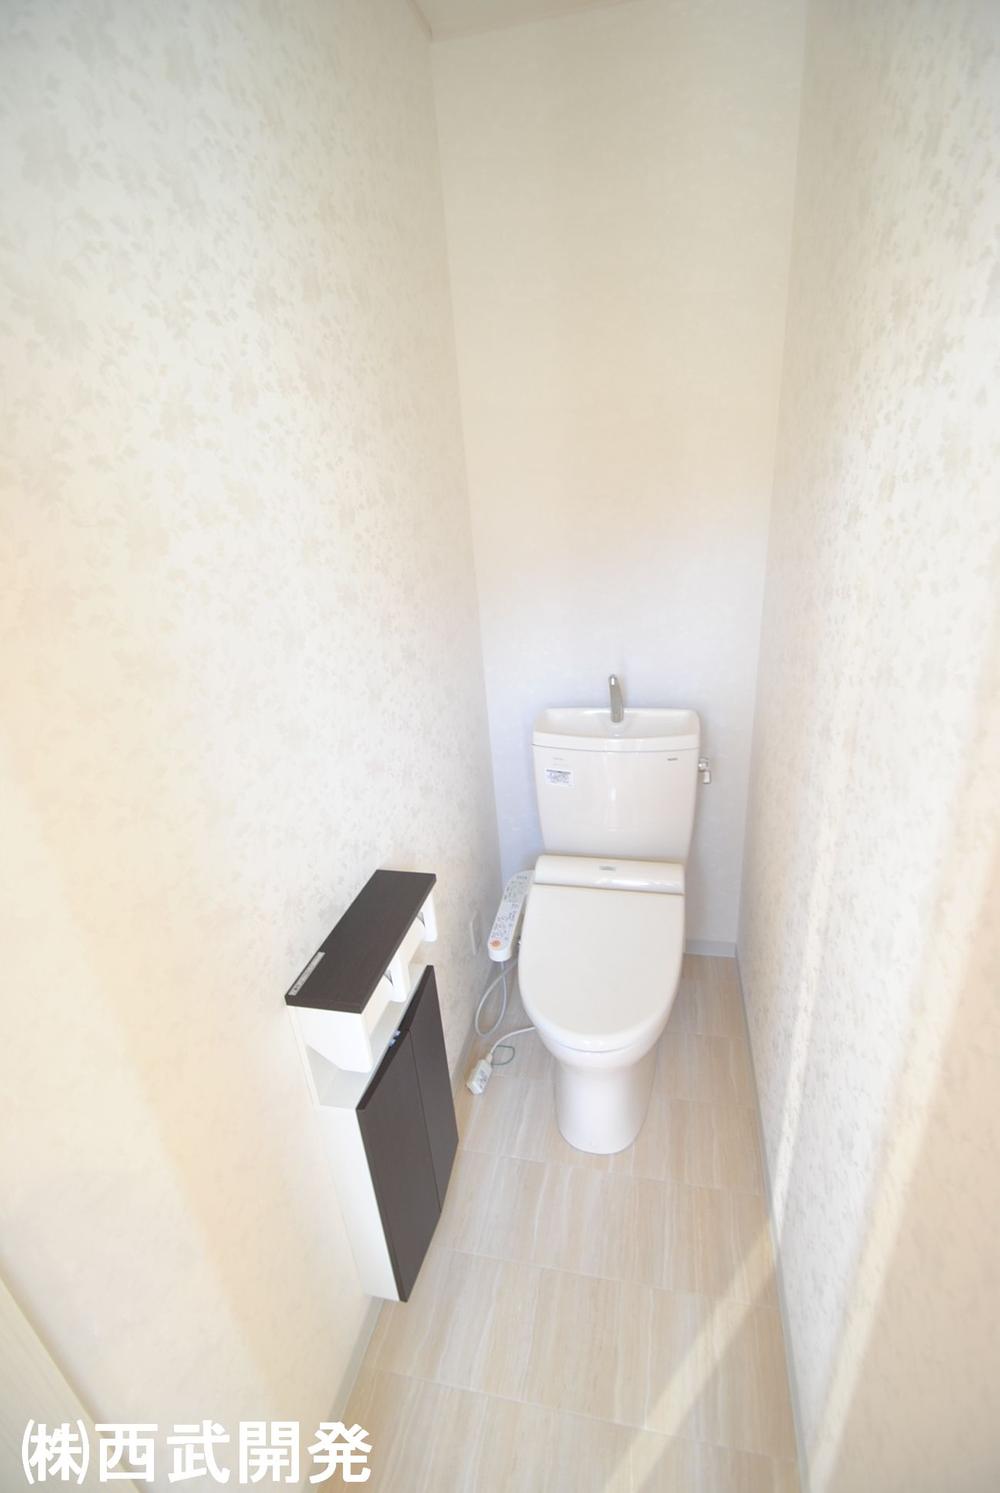 Toilet. Indoor (12 May 2013) Shooting Second floor